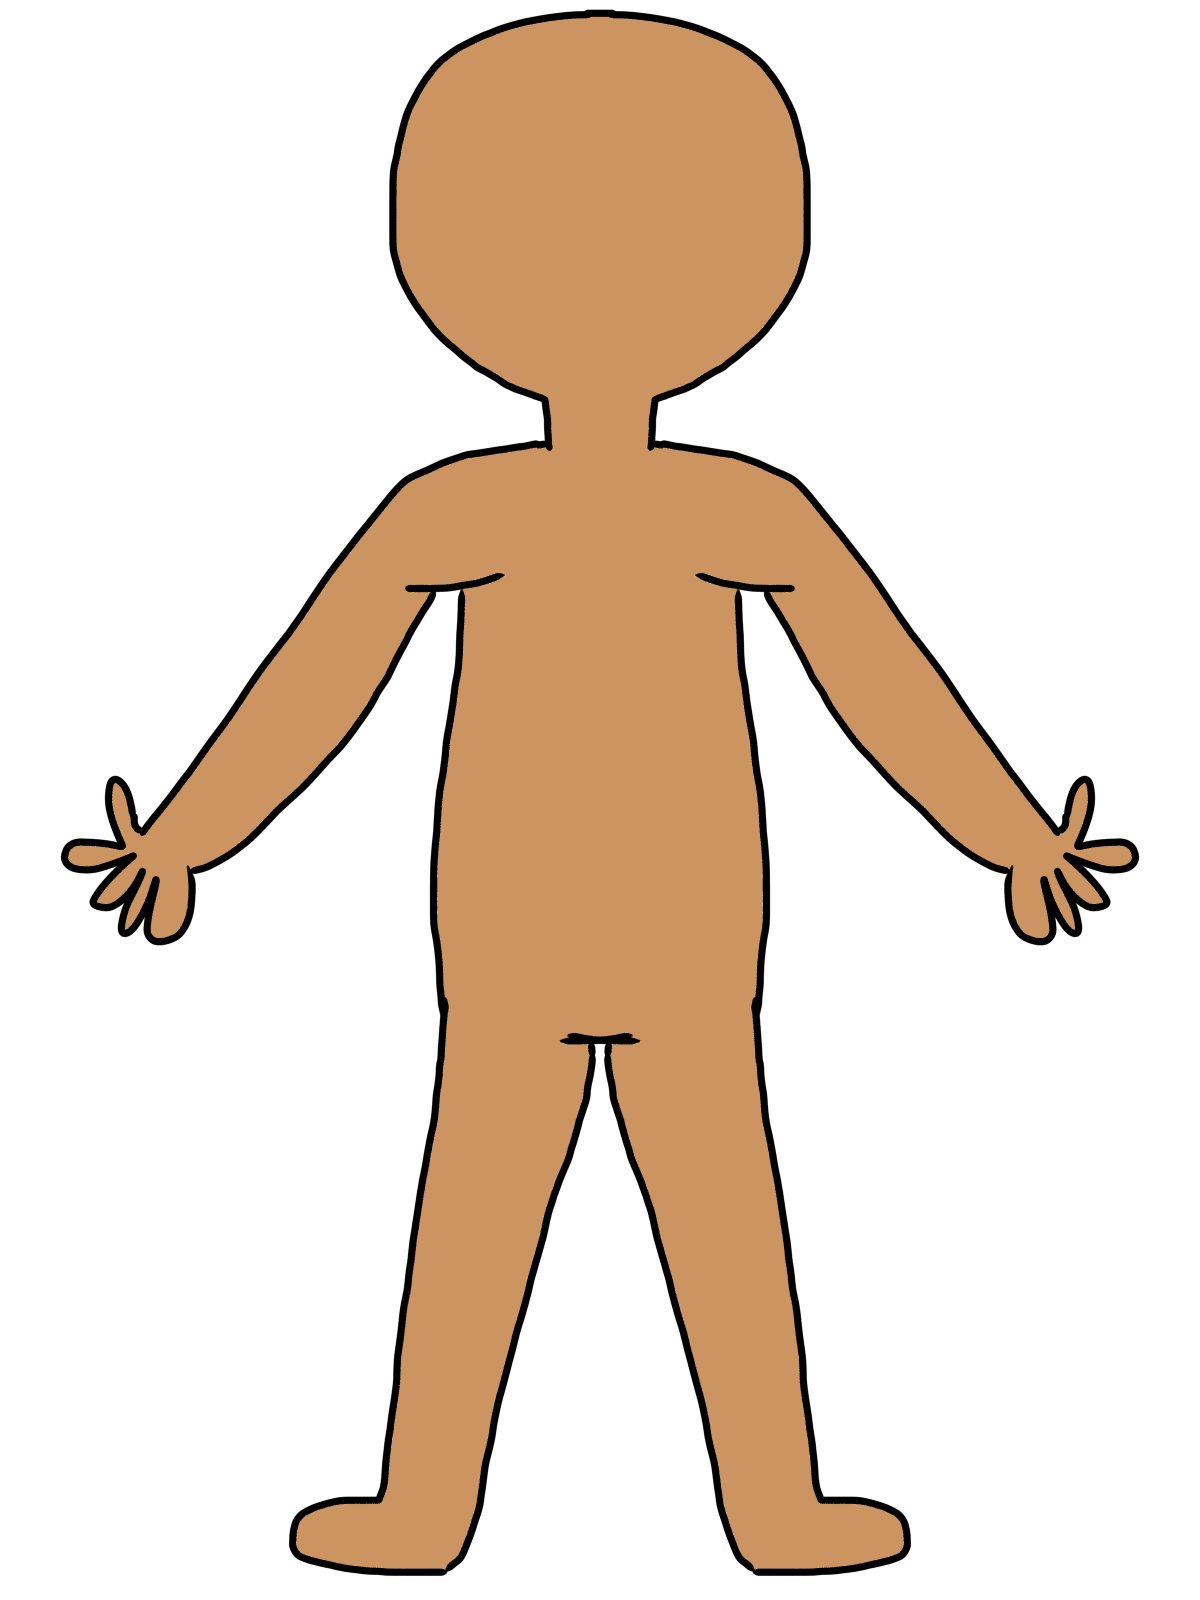 Human picture. Тело человека для детей. Человек рисунок для детей. Фигура человека для детей. Туловище человека.